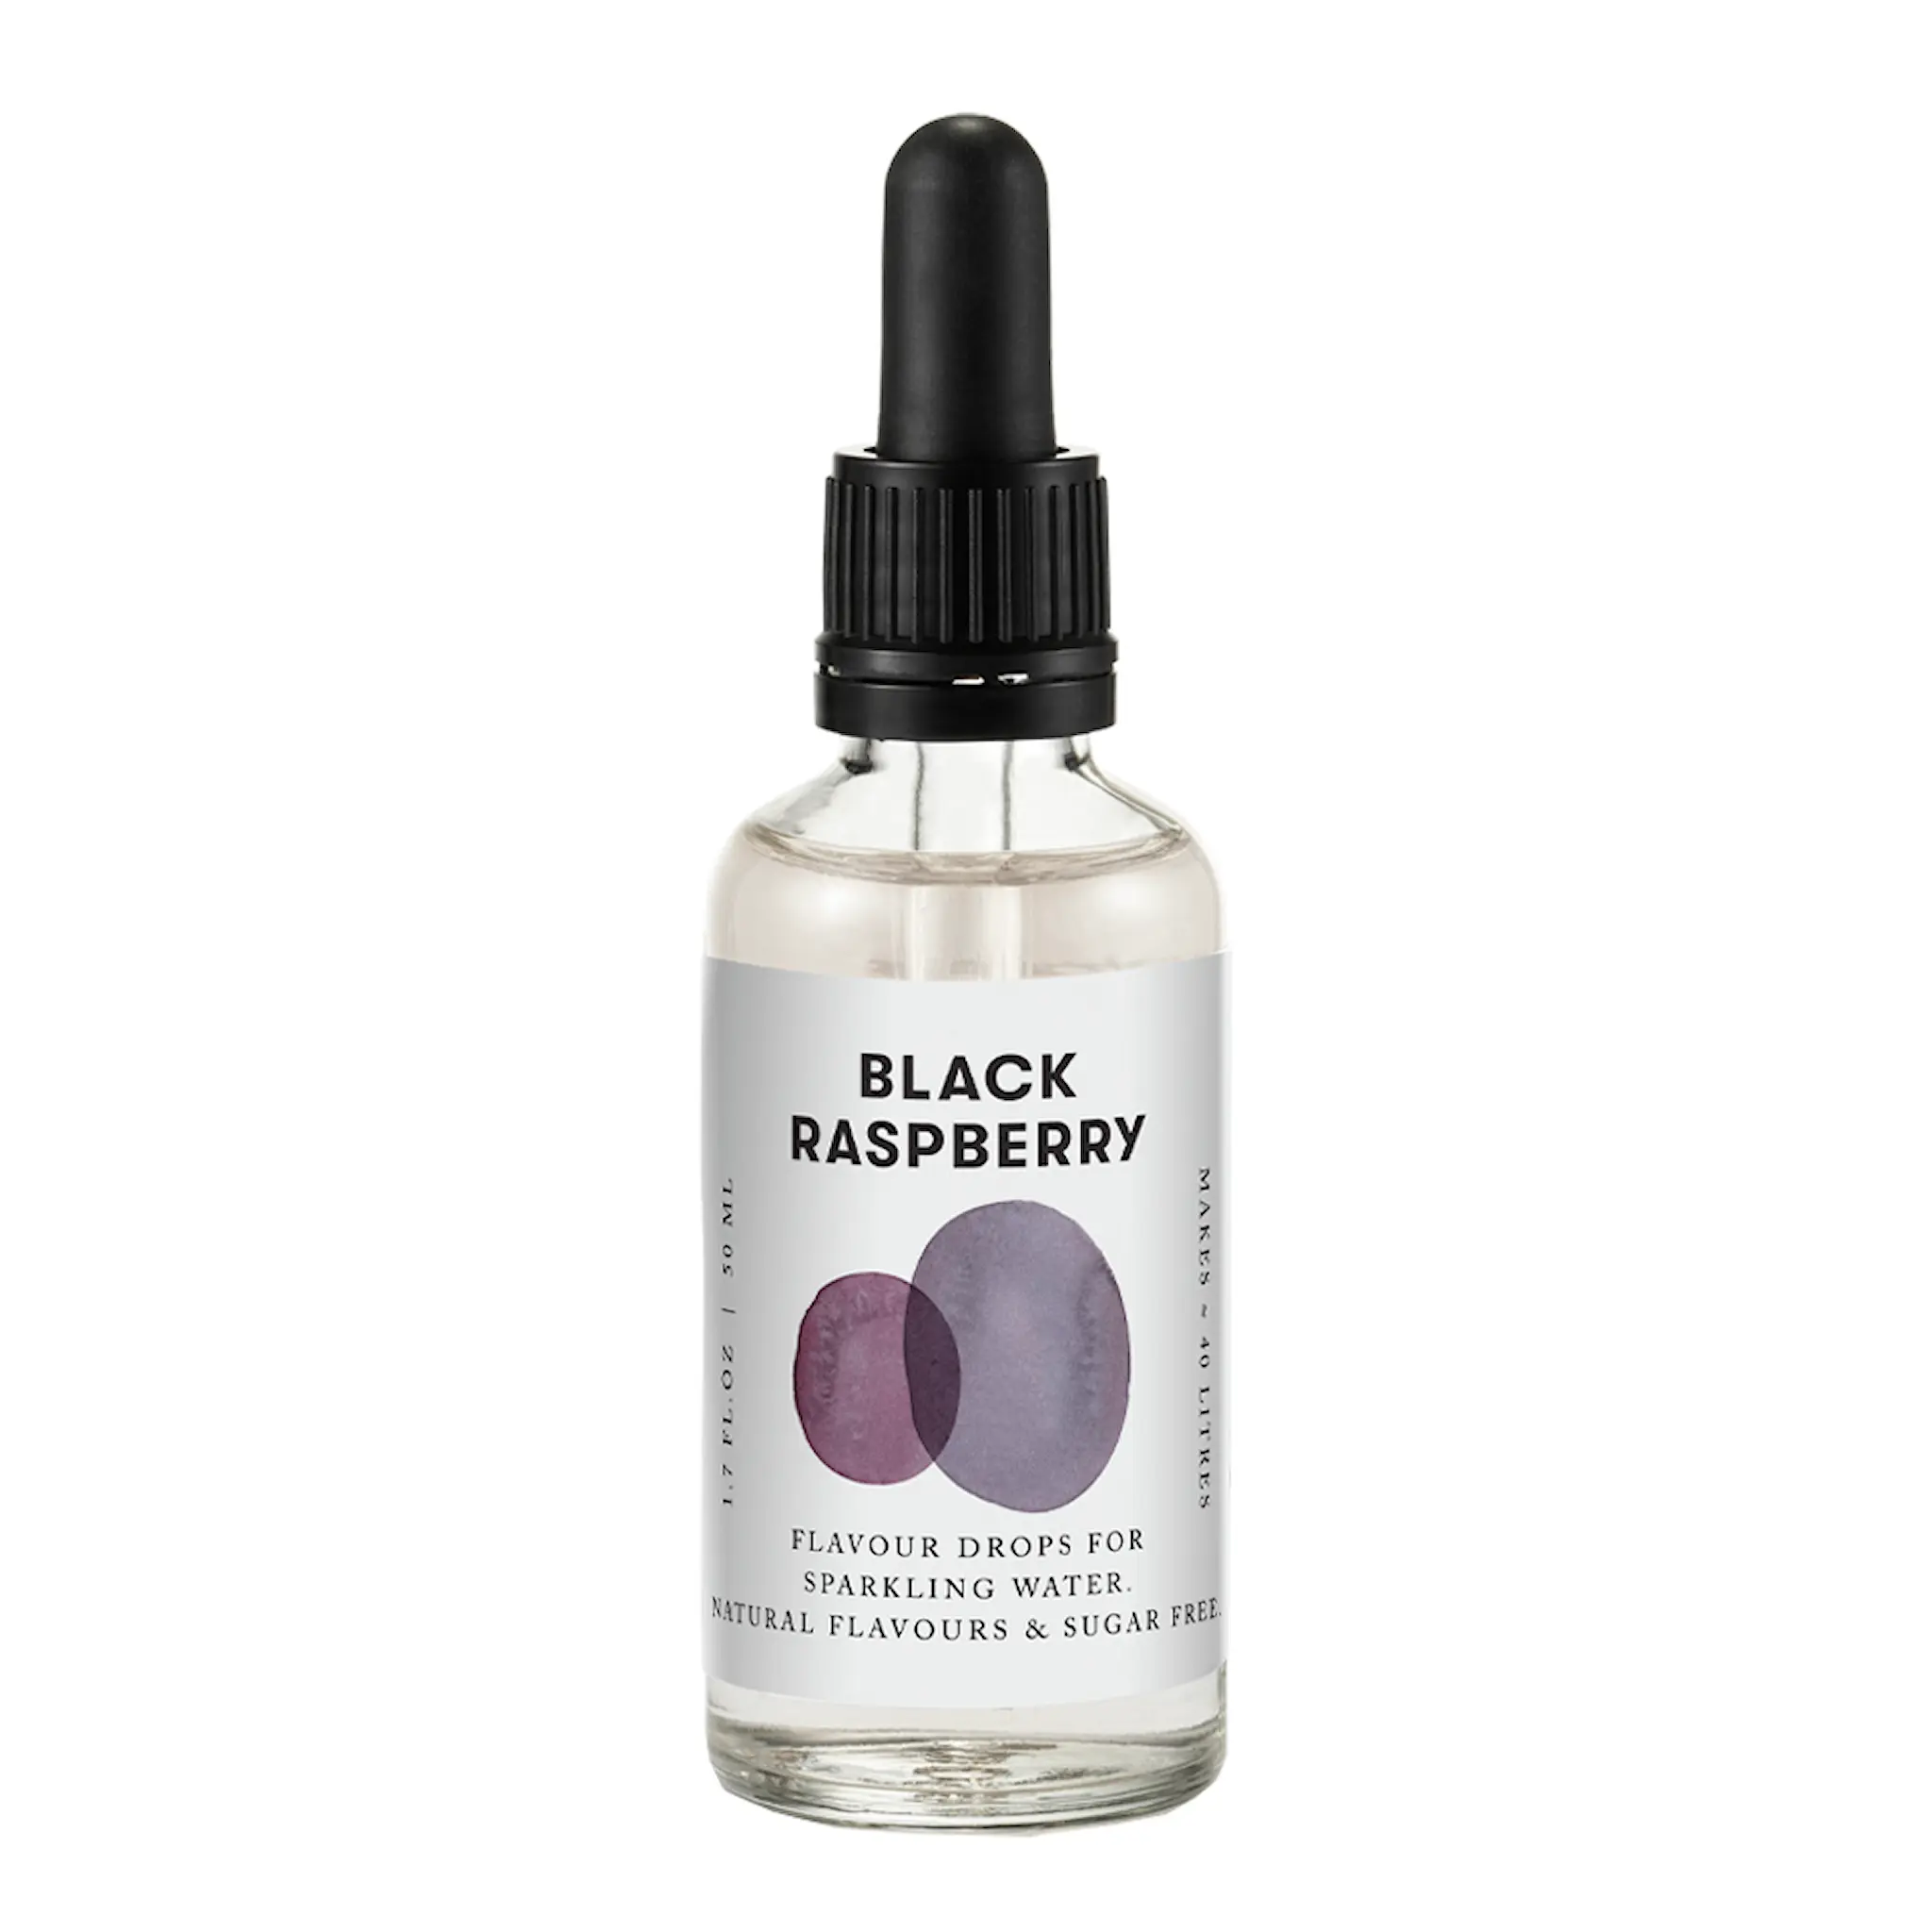 Aarke Flavour drops 50 ml black raspberry